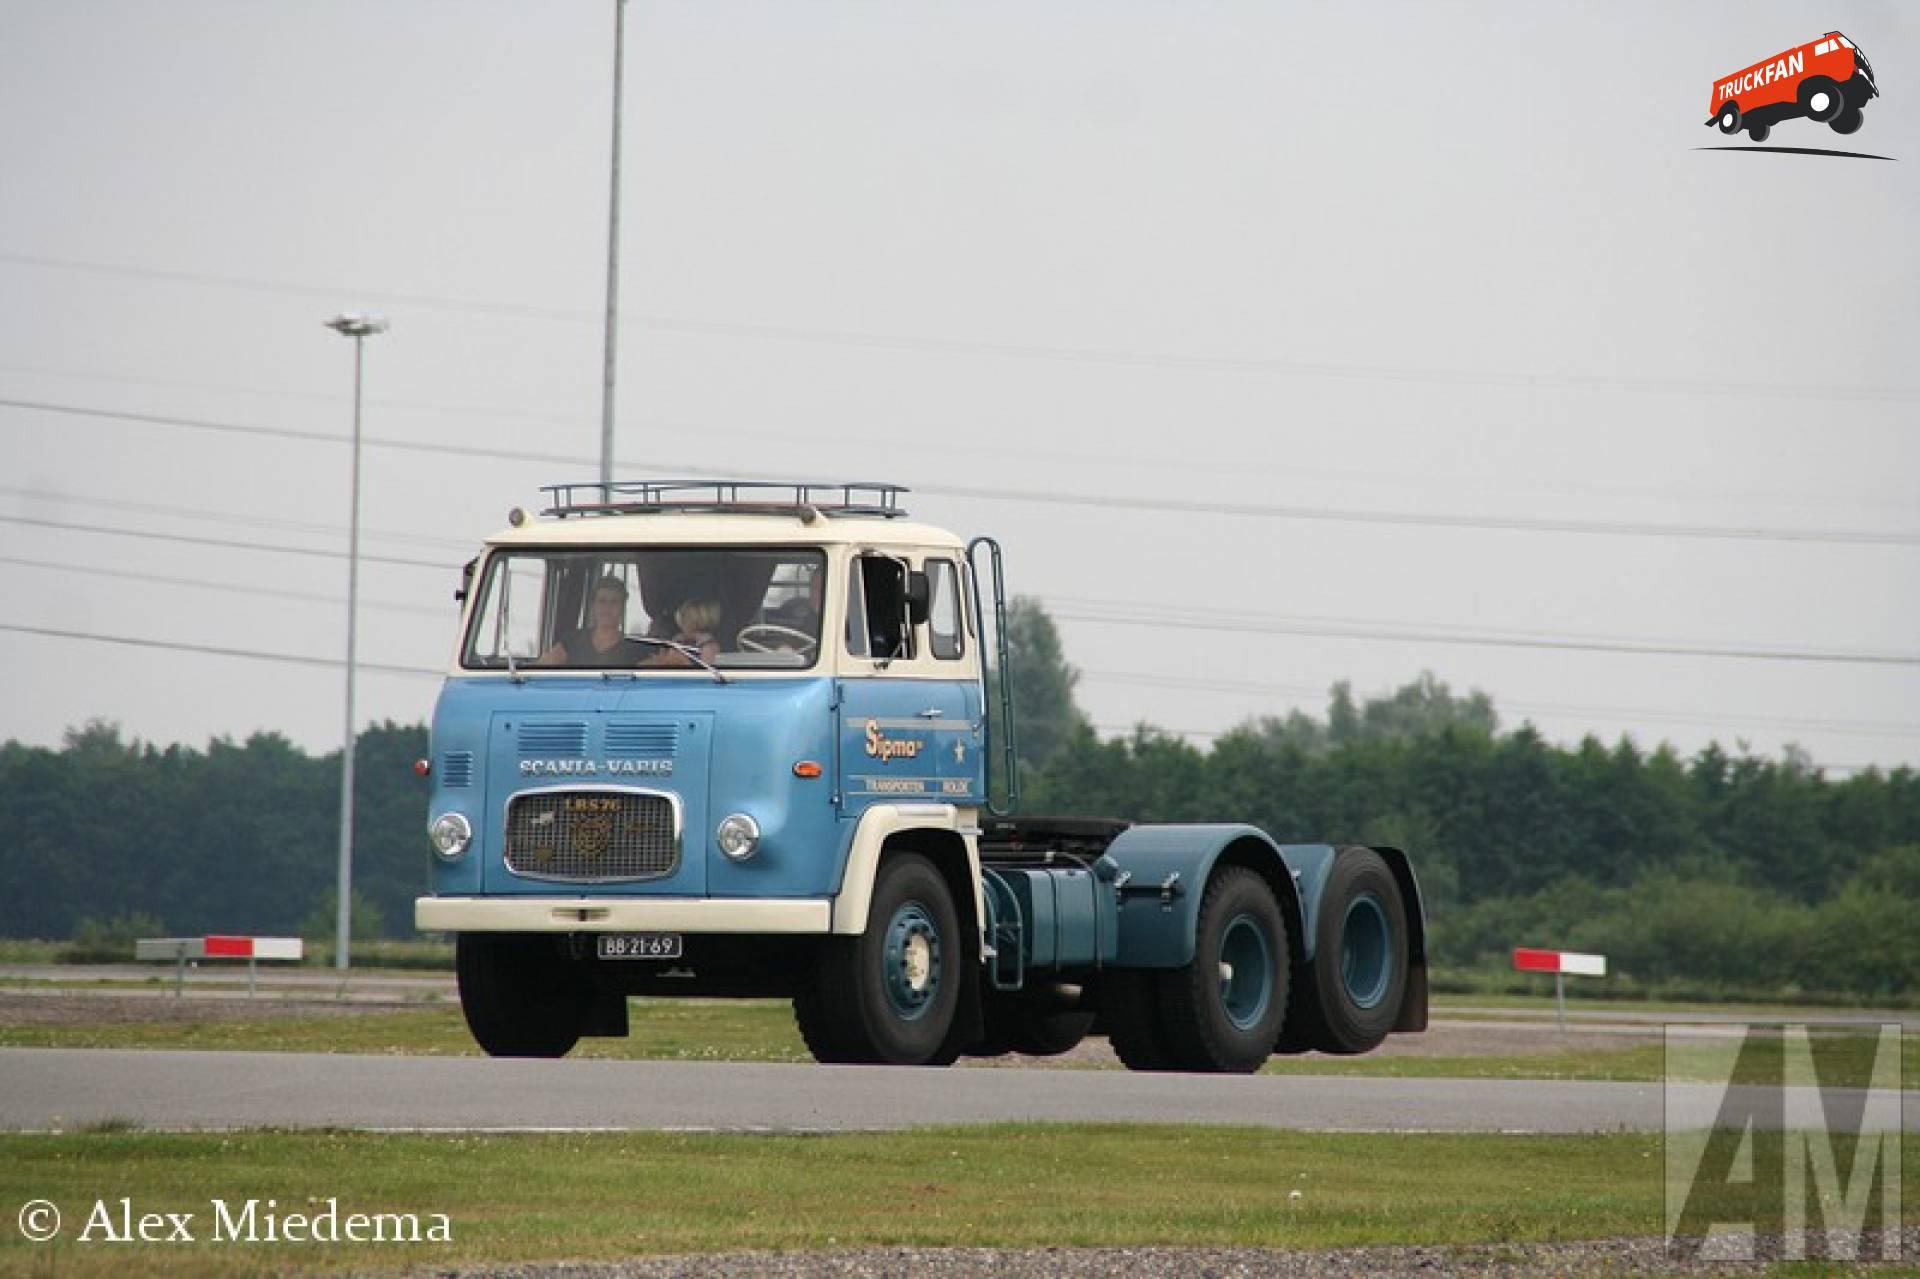 Scania-Vabis LB76